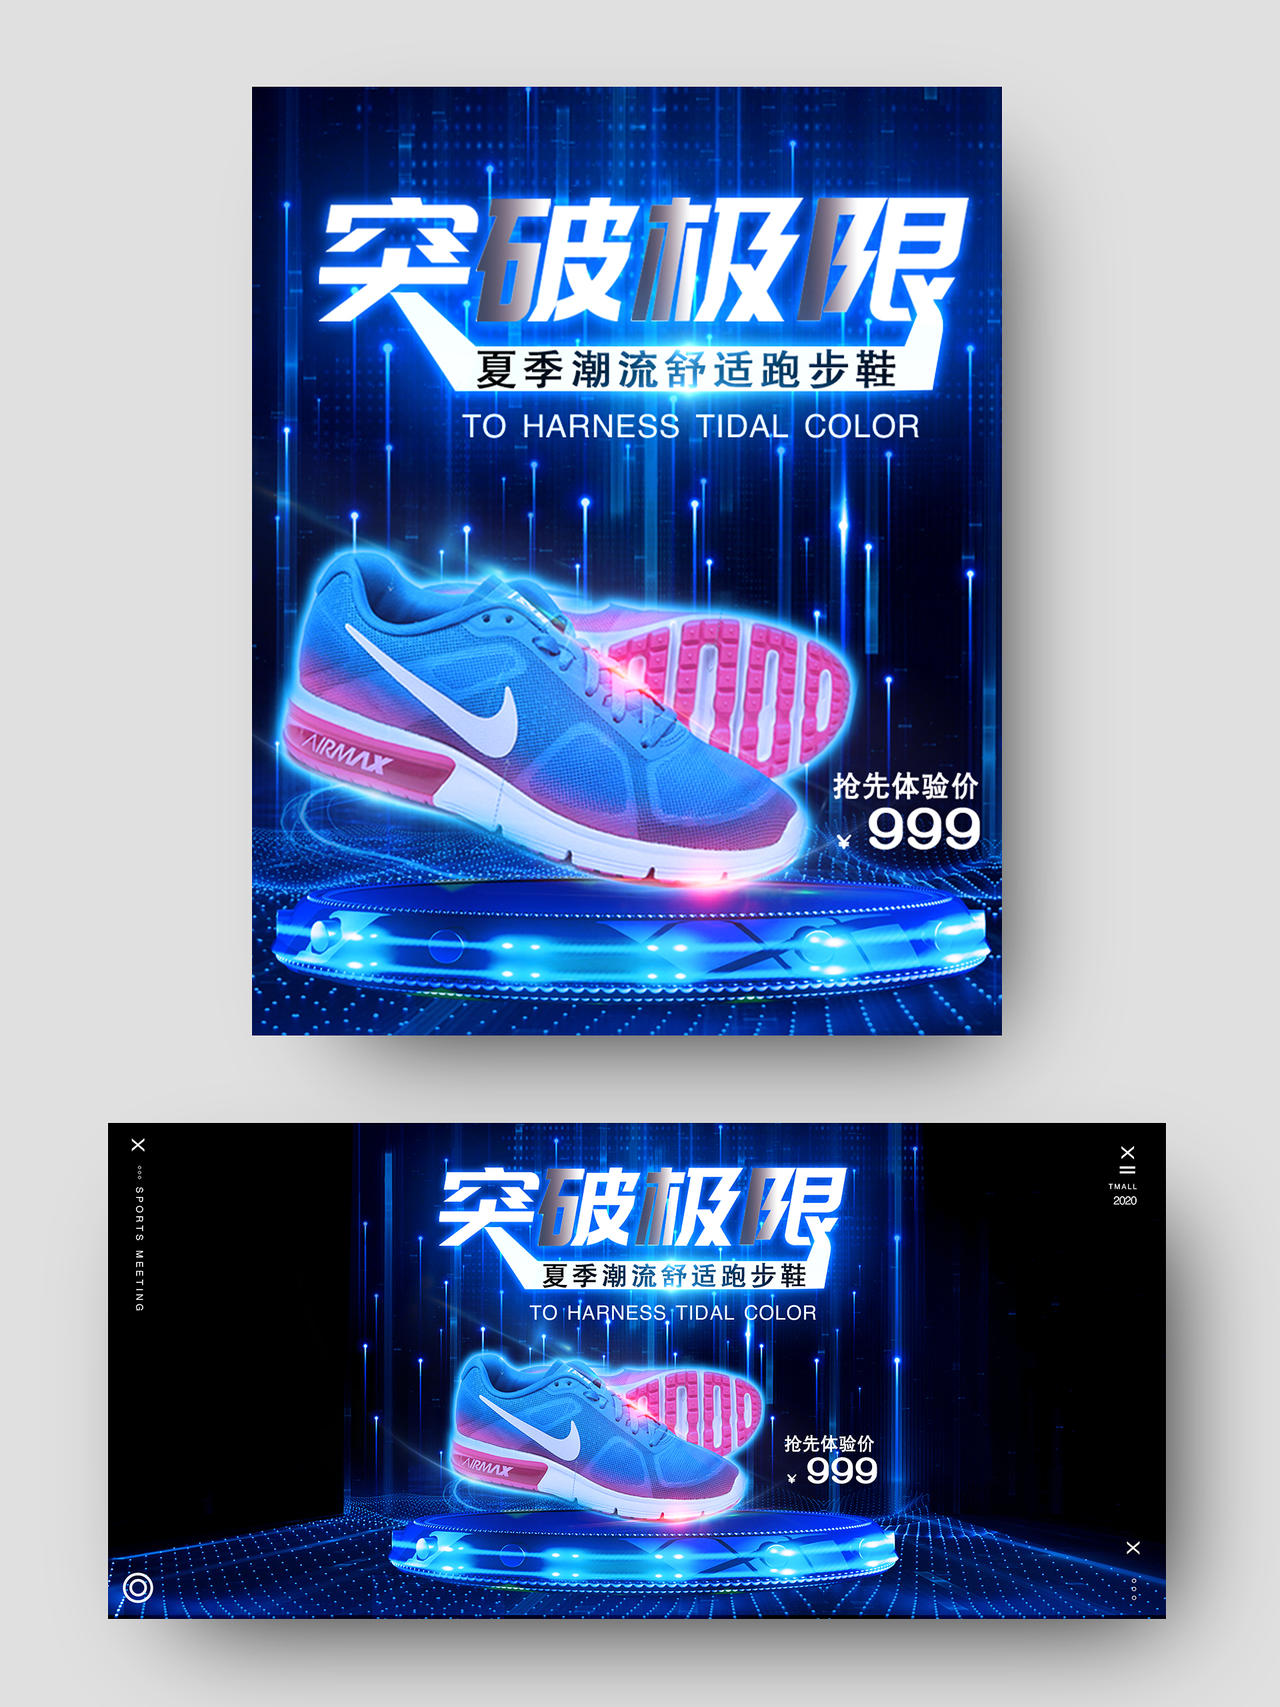 鞋子蓝色科技突破极限夏季潮流跑步鞋男鞋运动鞋电商淘宝天猫促销海报